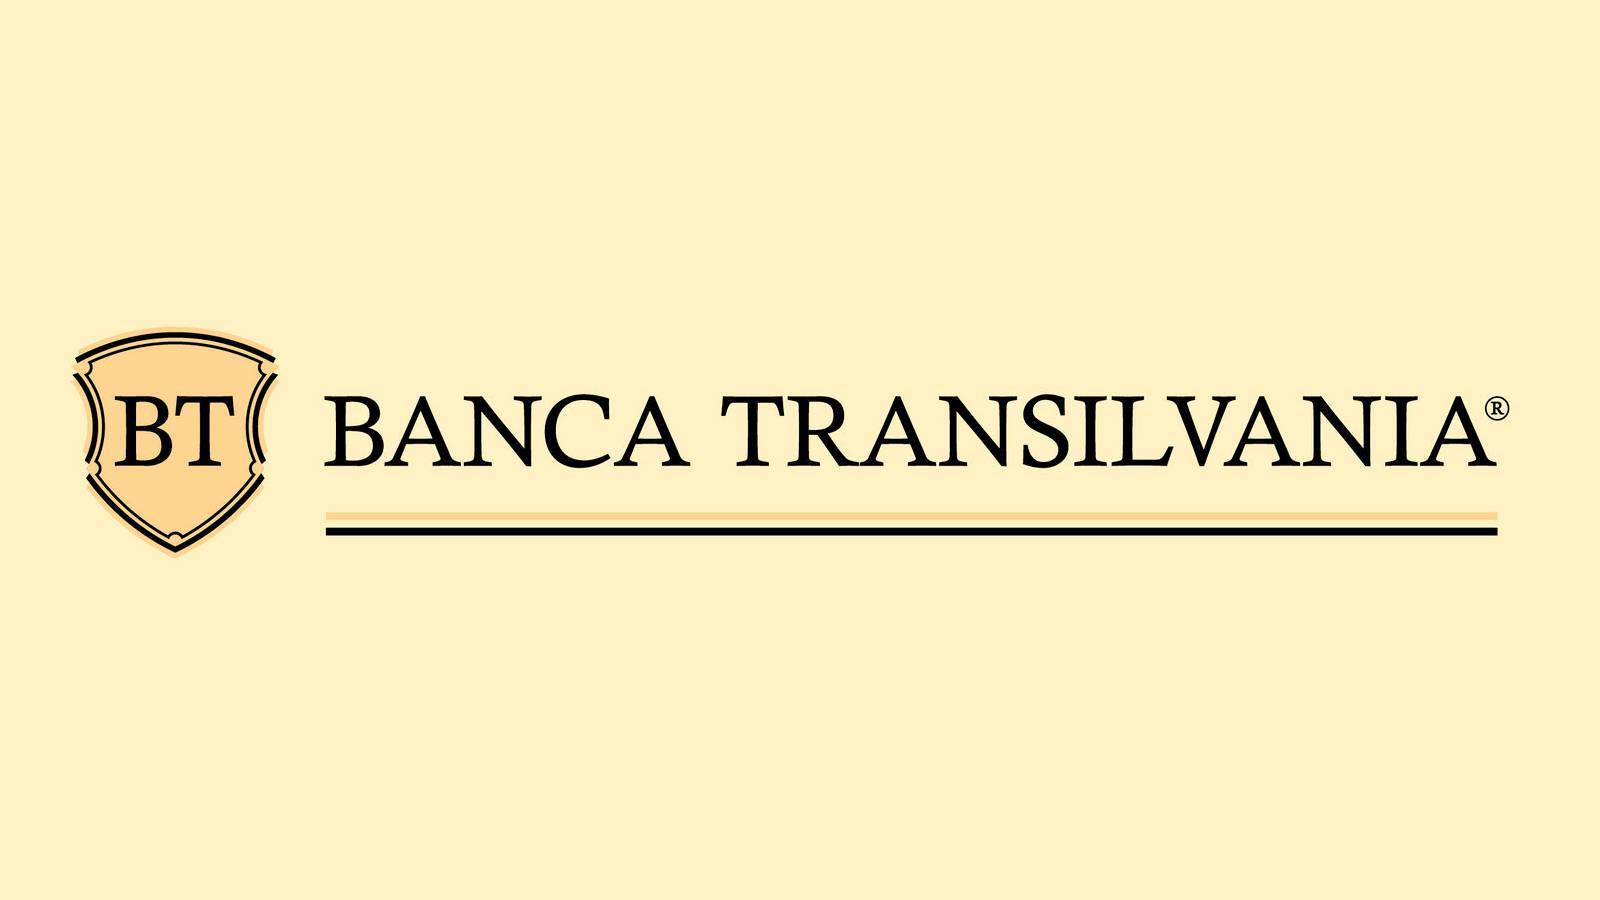 Aviso oficial de BANCA Transilvania ÚLTIMO MOMENTO puesto a la ATENCIÓN de los clientes rumanos